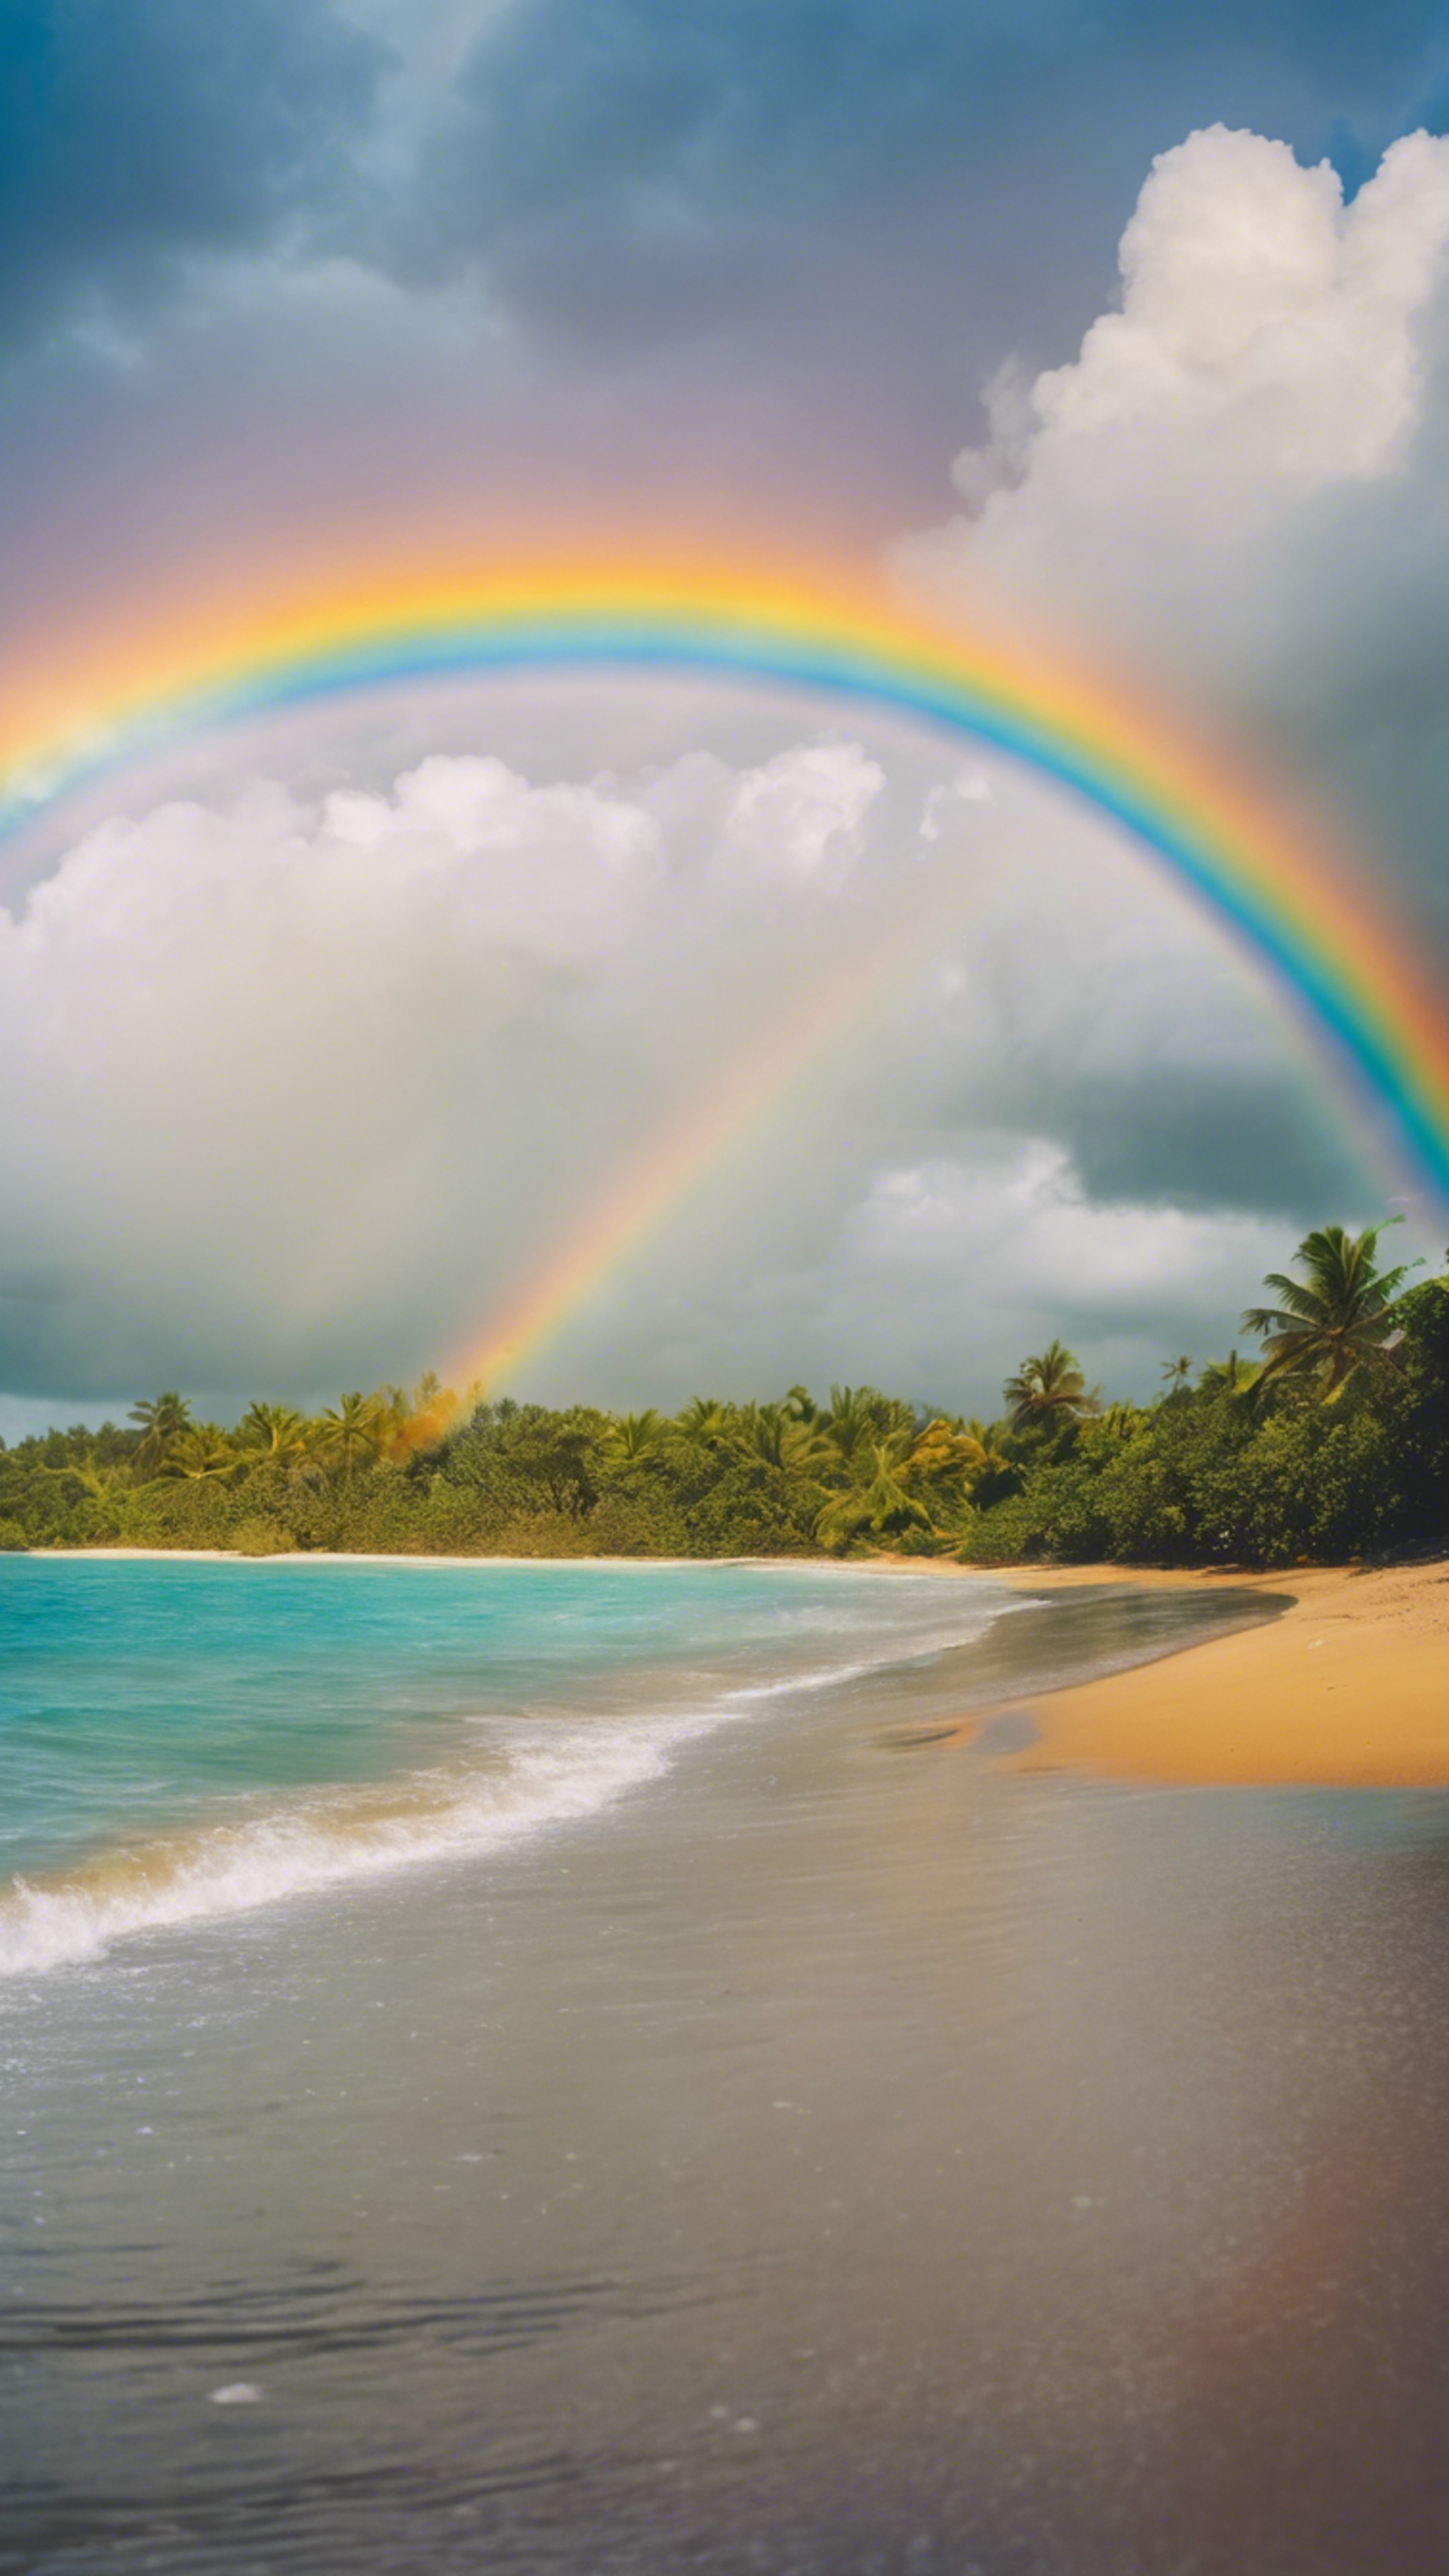 Vivid rainbow arcing across the sky after a rainfall at a tropical beach. טפט[d3854ca165cf432a9c18]